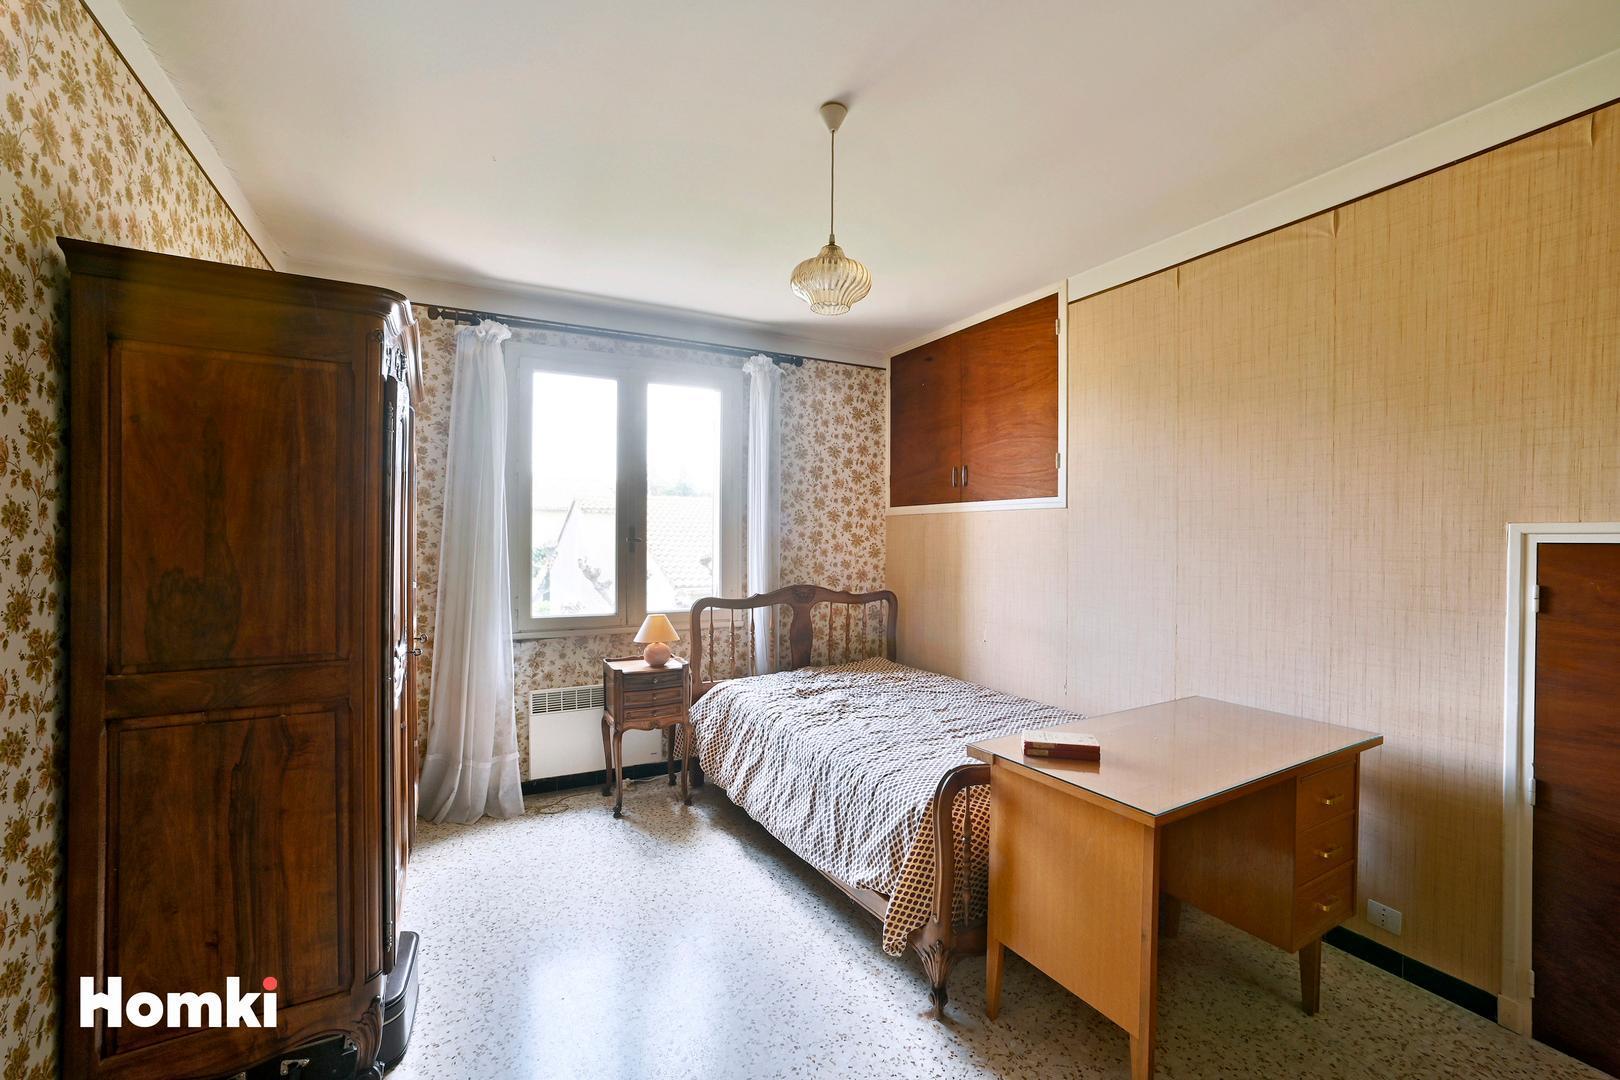 Homki - Vente Maison/villa  de 190.0 m² à Bagnols-sur-Cèze 30200